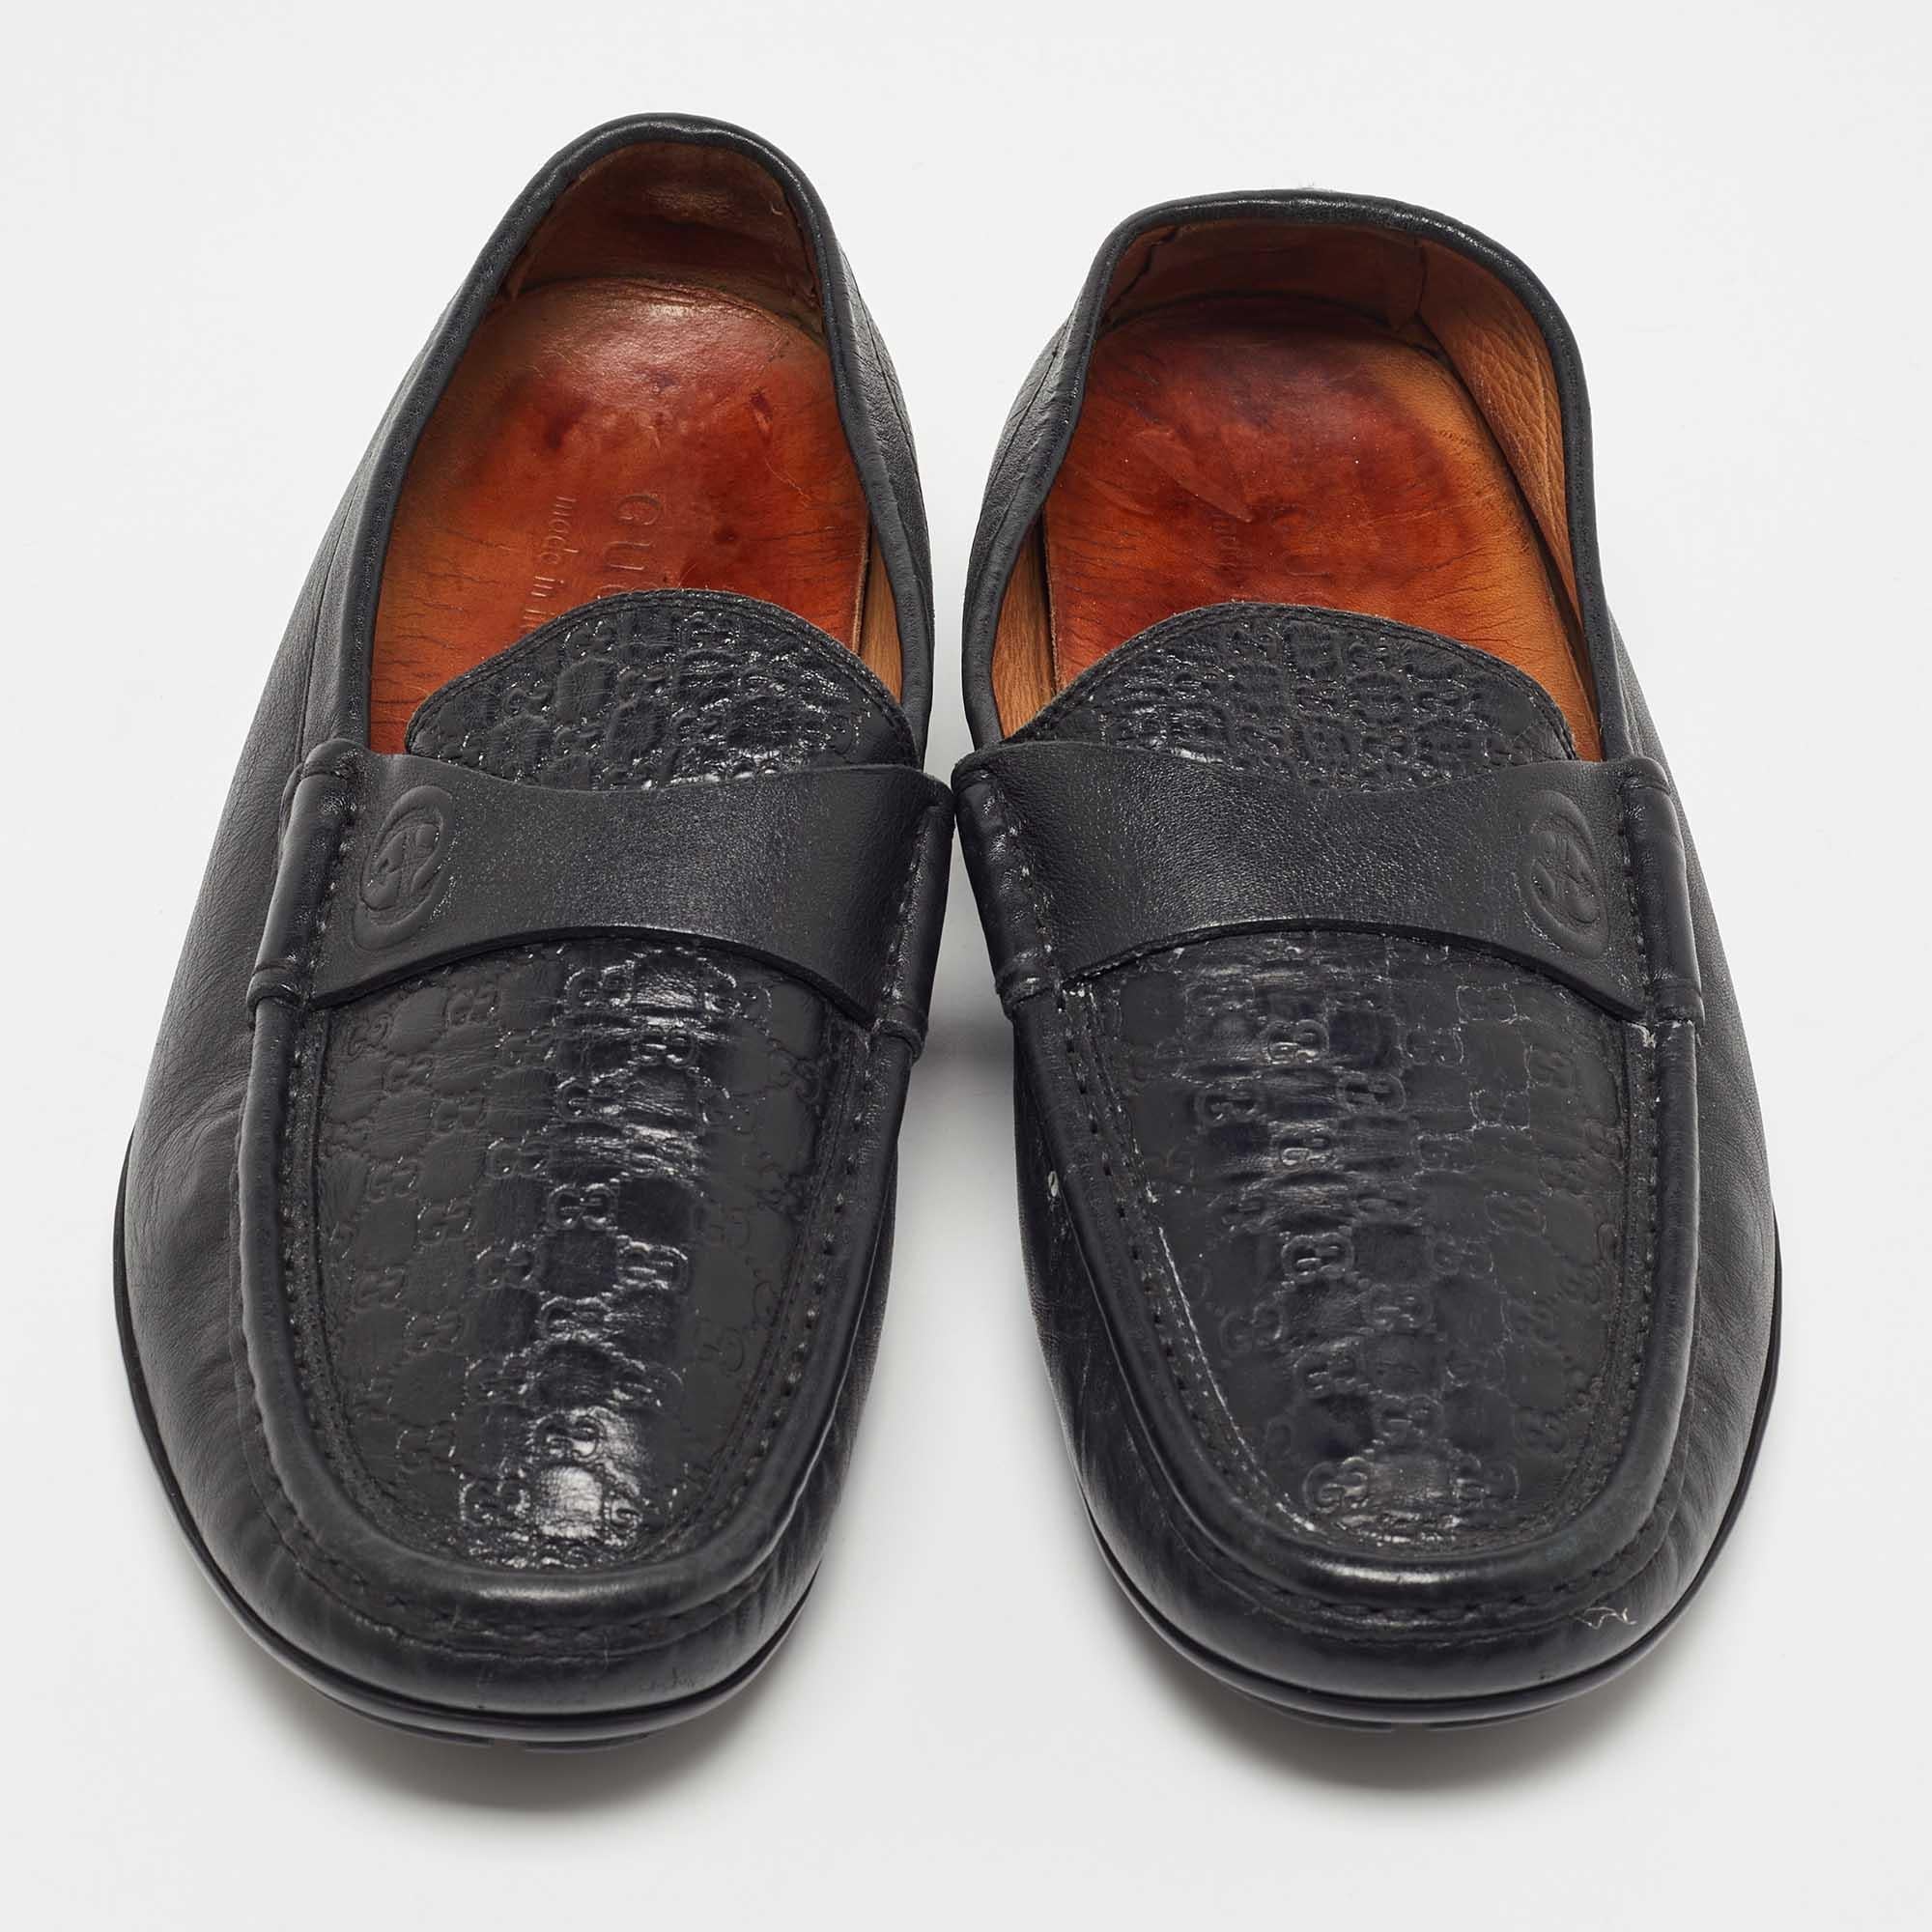 Praktisch, modisch und strapazierfähig - diese Gucci Loafers sind sorgfältig gefertigt, um Ihren täglichen Stil zu begleiten. Sie werden aus den besten MATERIALEN hergestellt und sind ein wertvoller Kauf.

